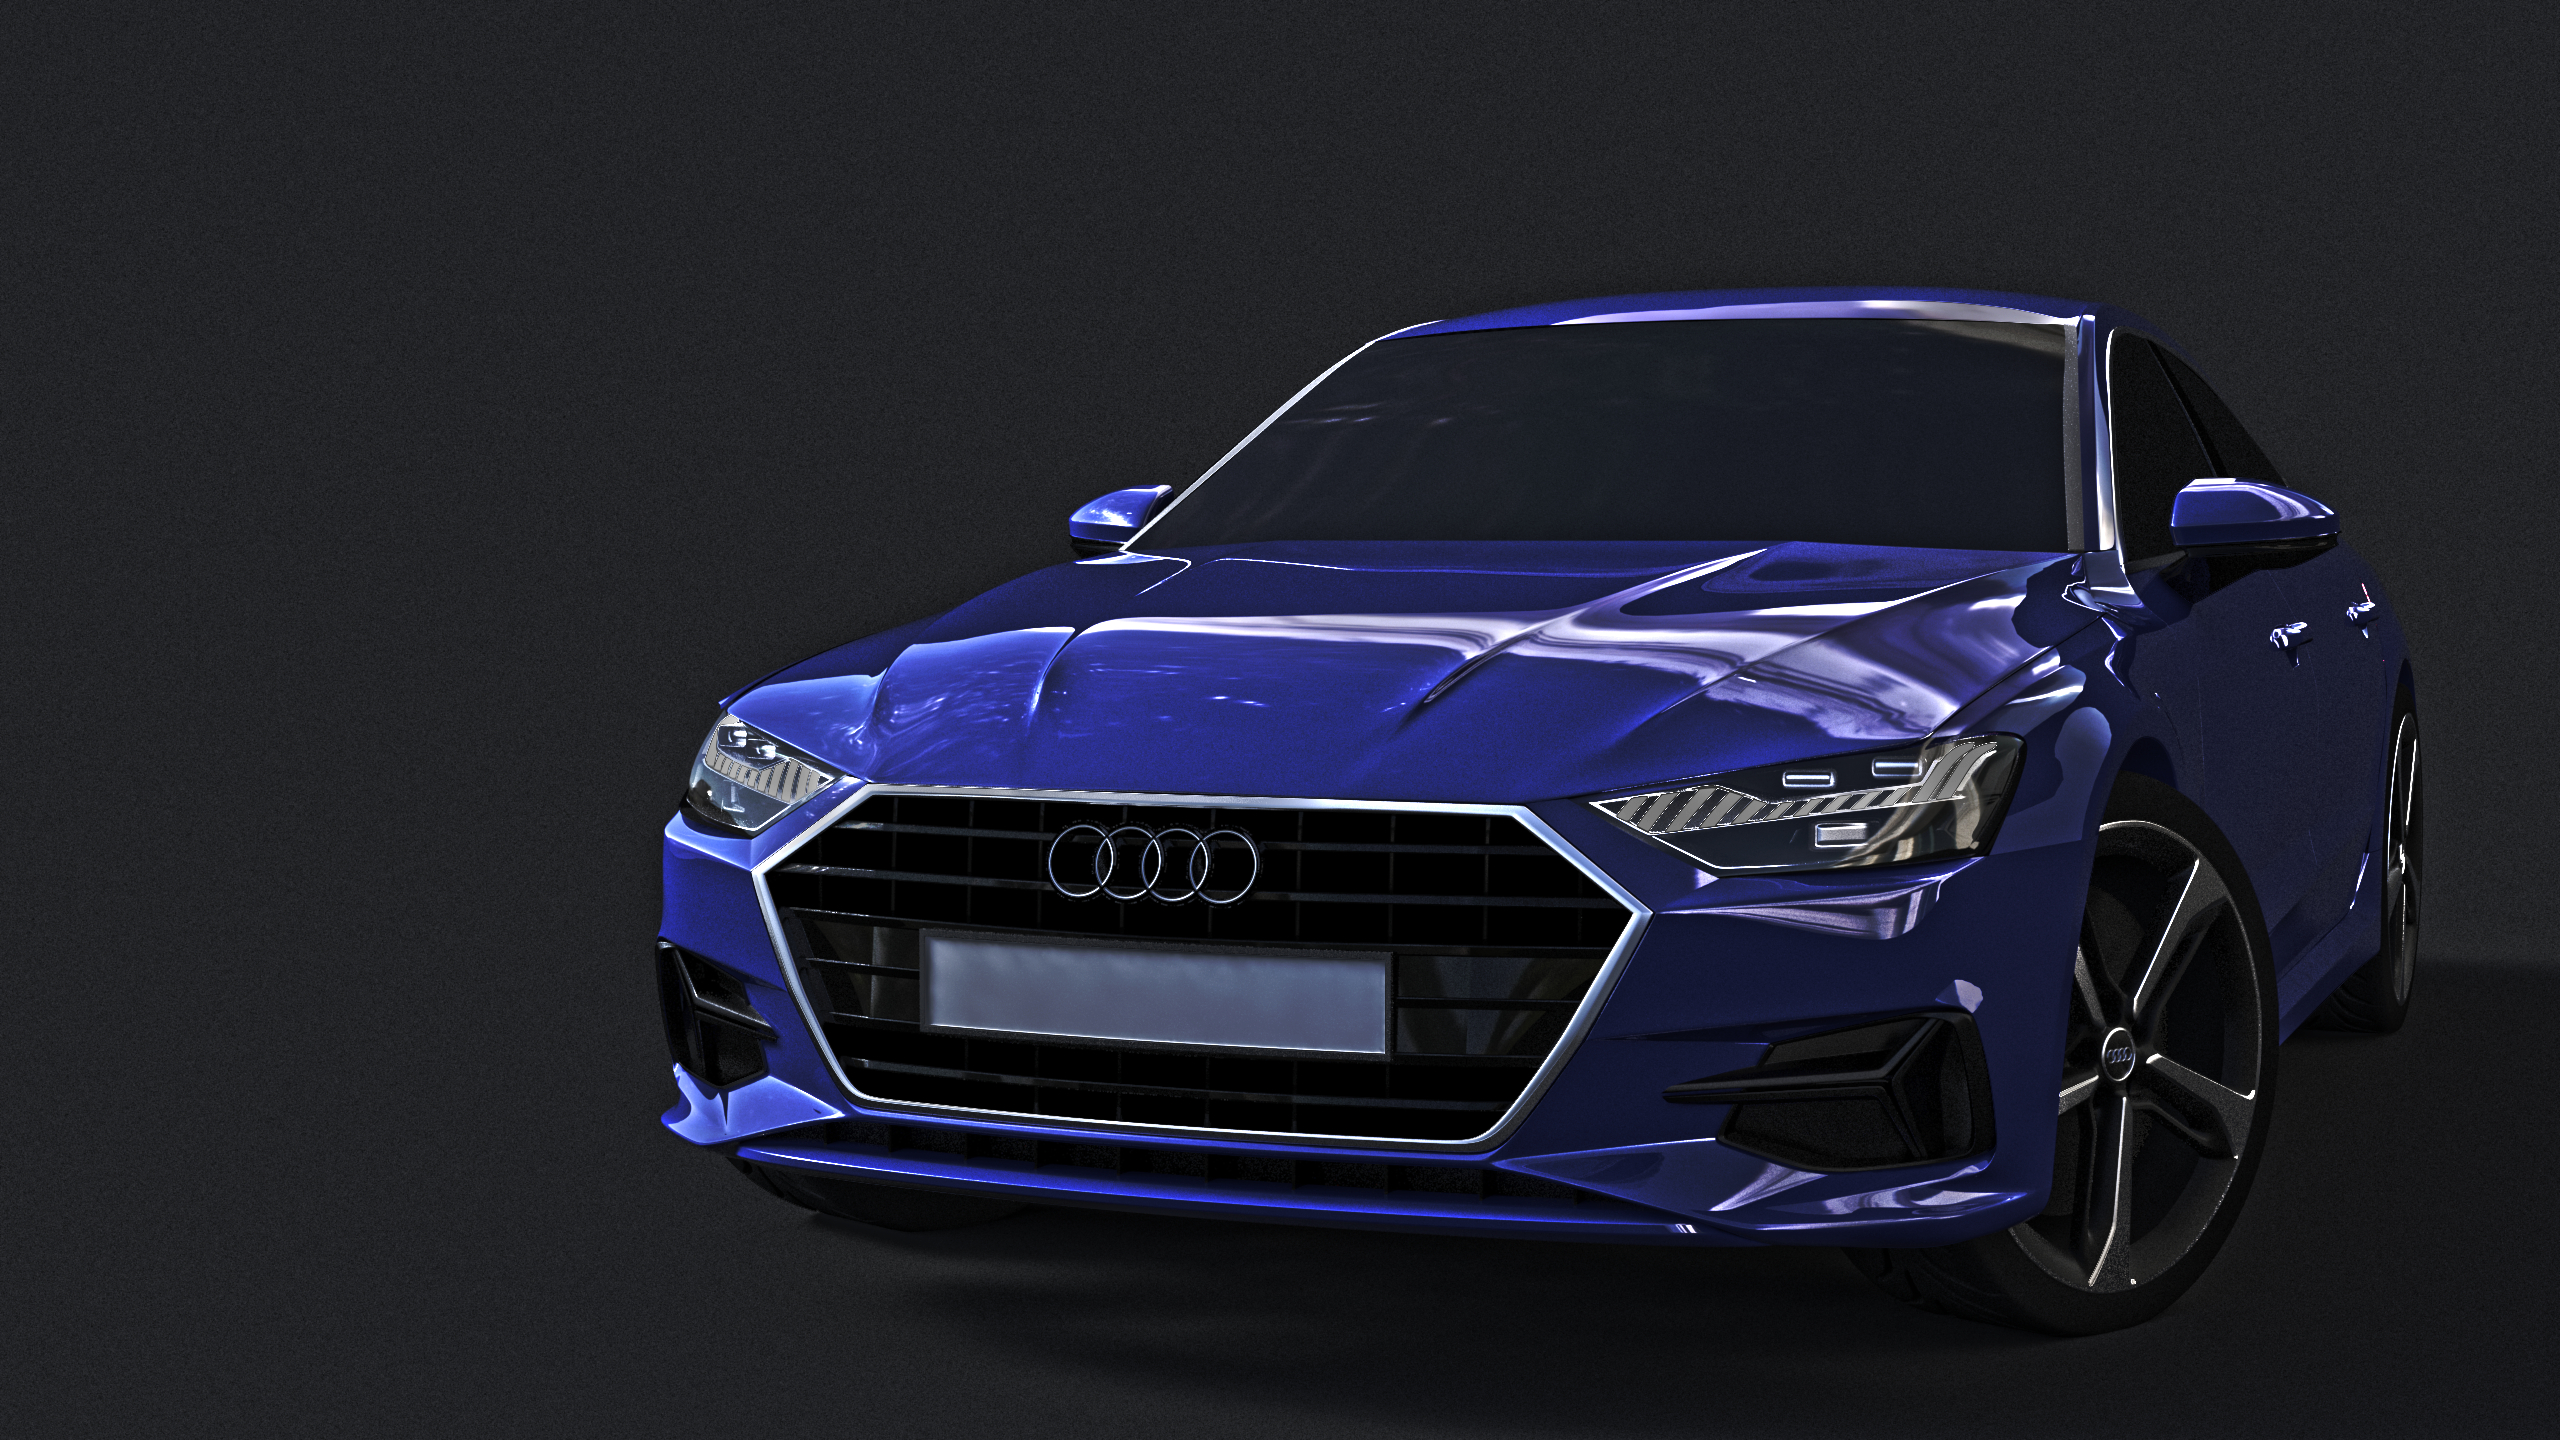 Audi in Blender cycles render Bild